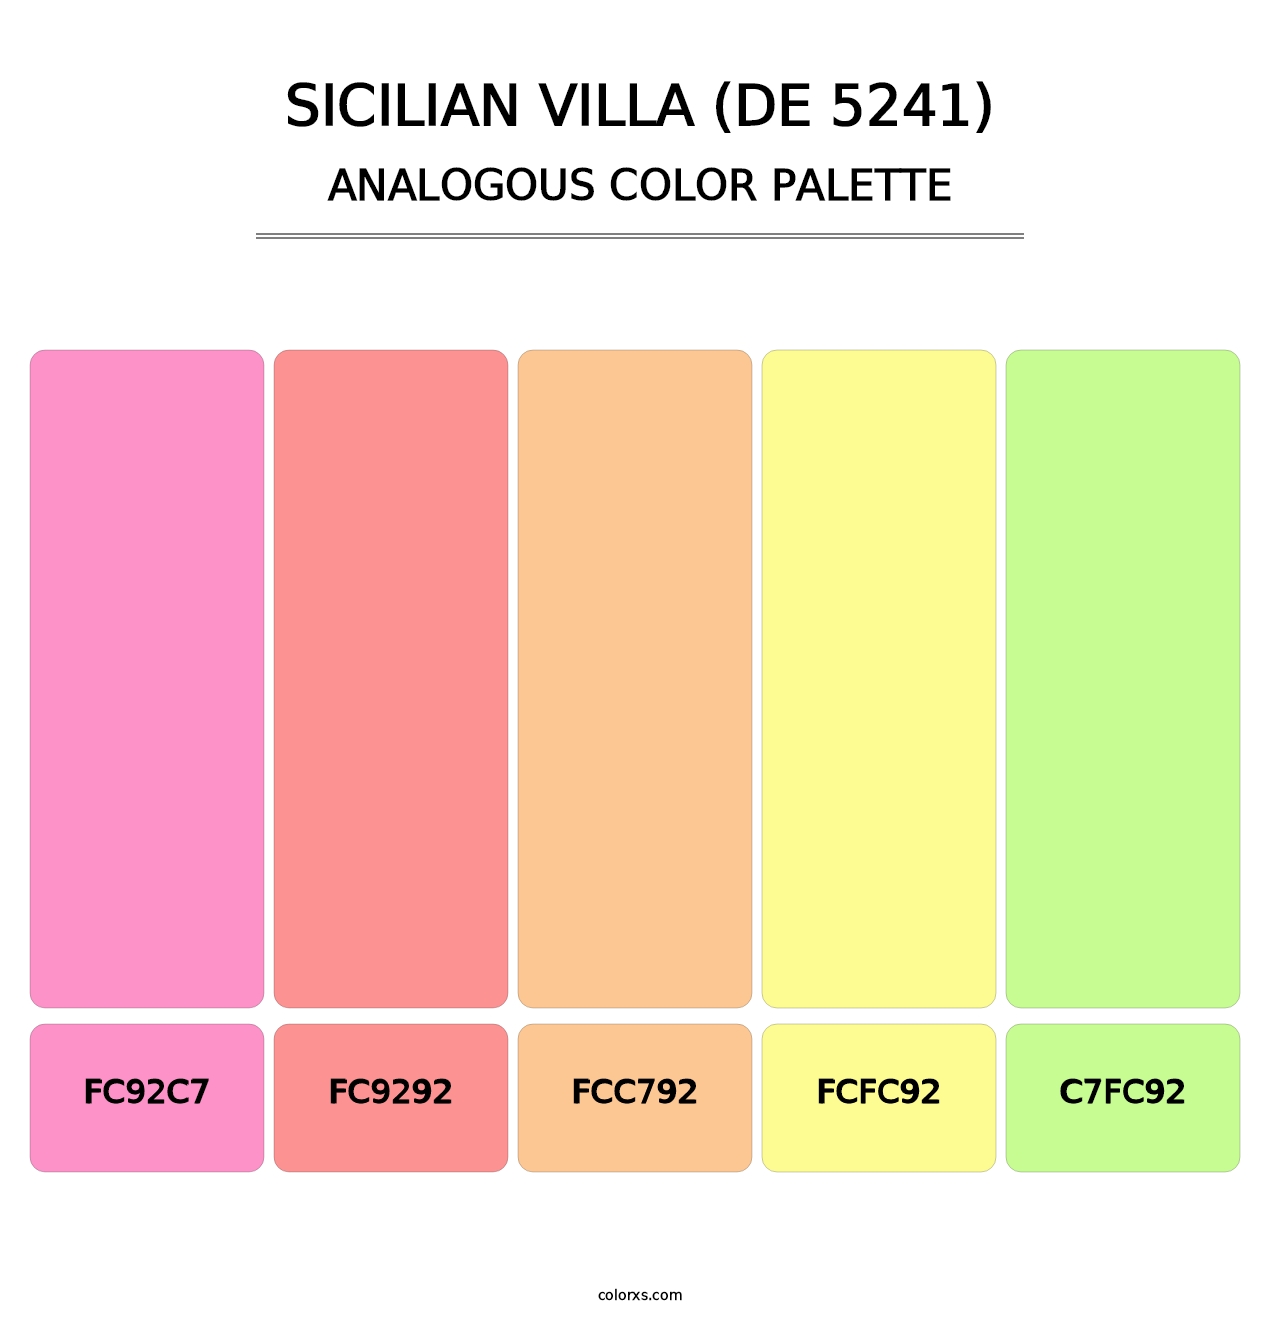 Sicilian Villa (DE 5241) - Analogous Color Palette